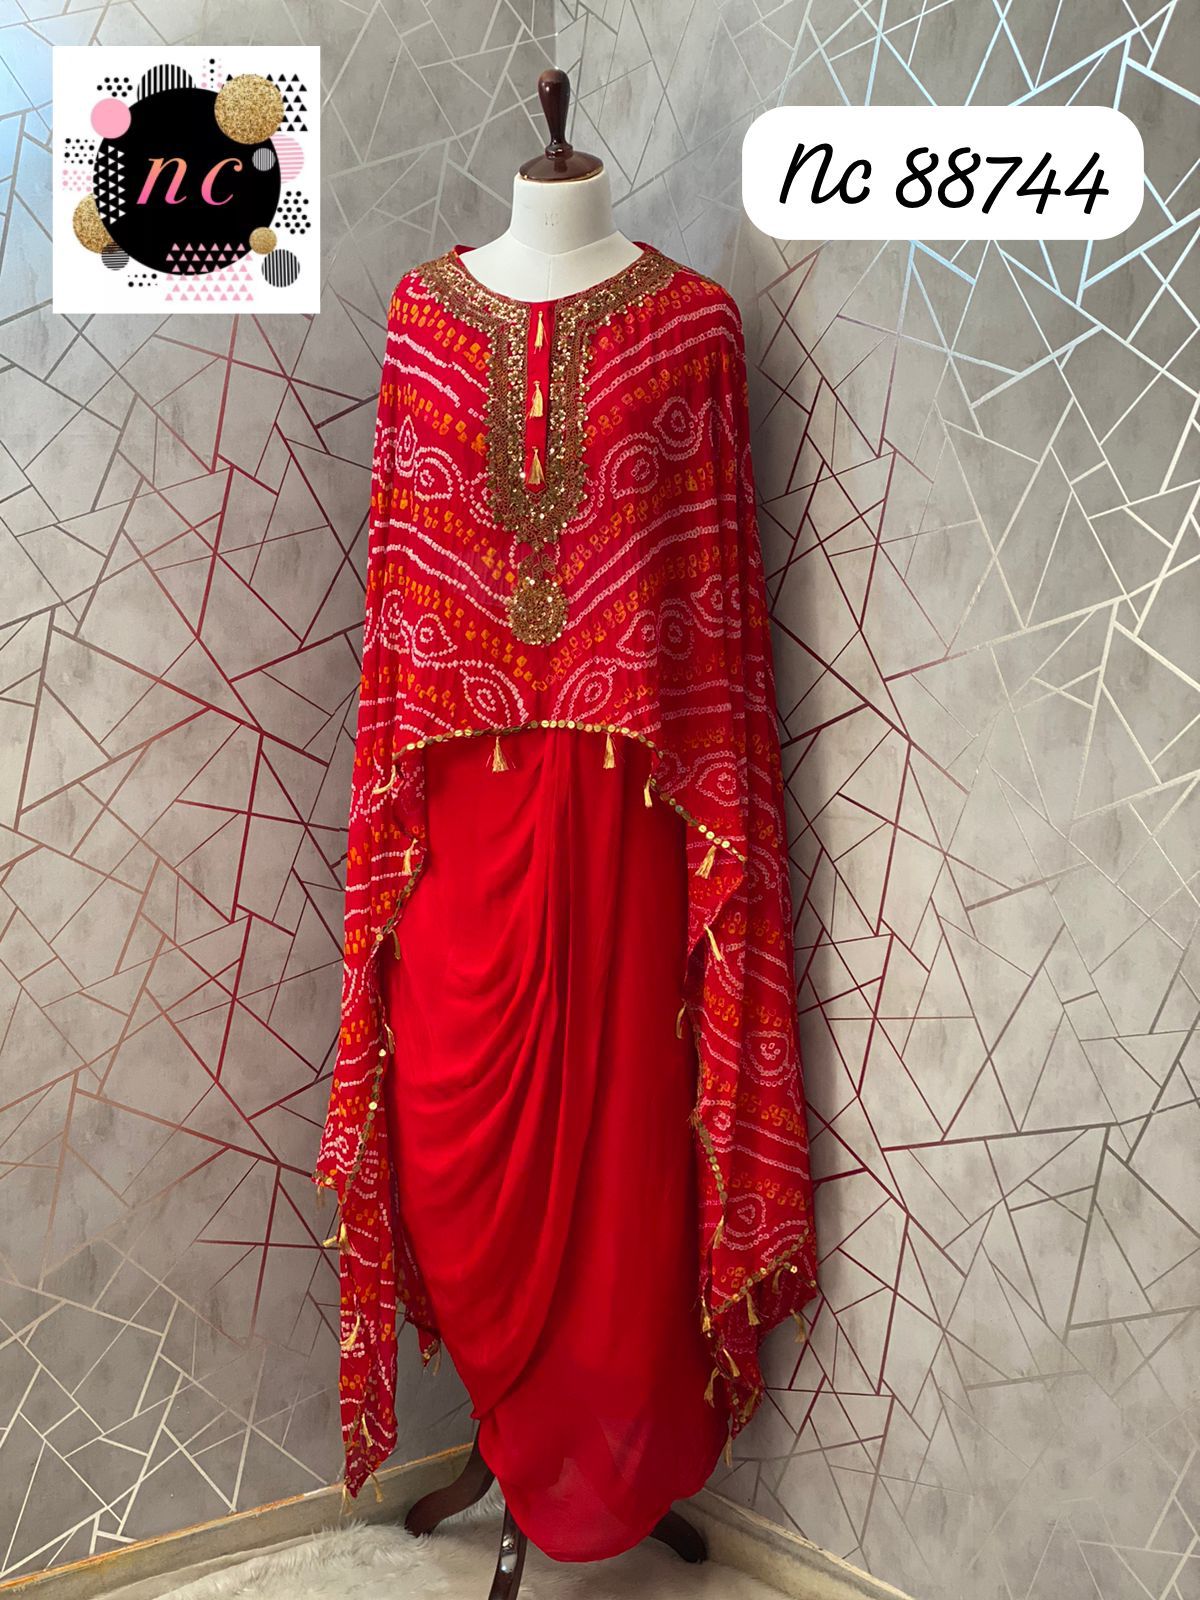 Red bandhani indowestern dress